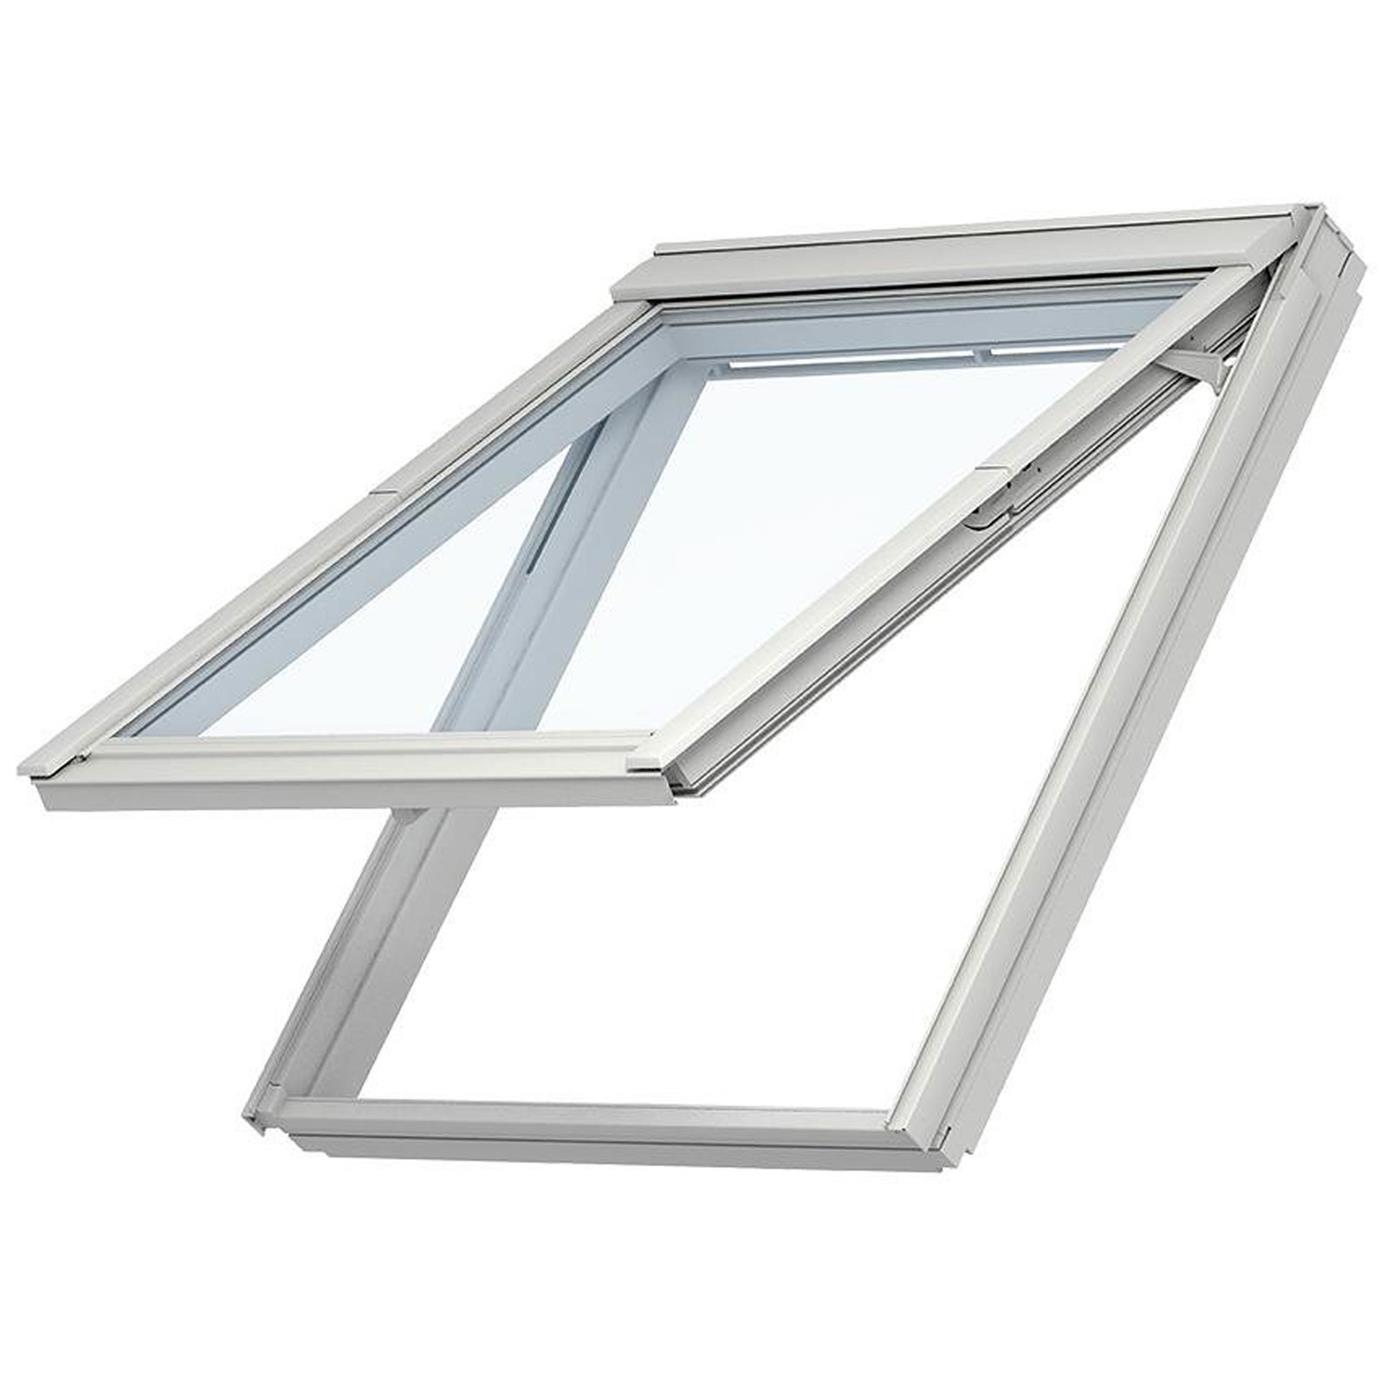 VELUX Dachfenster Austausch-Klapp-Schwing-Fenster Kunststoff VKU Y47 0081,  ENERGIE AUSTAUSCH Verglasung, Polyurethan/Alu, 75